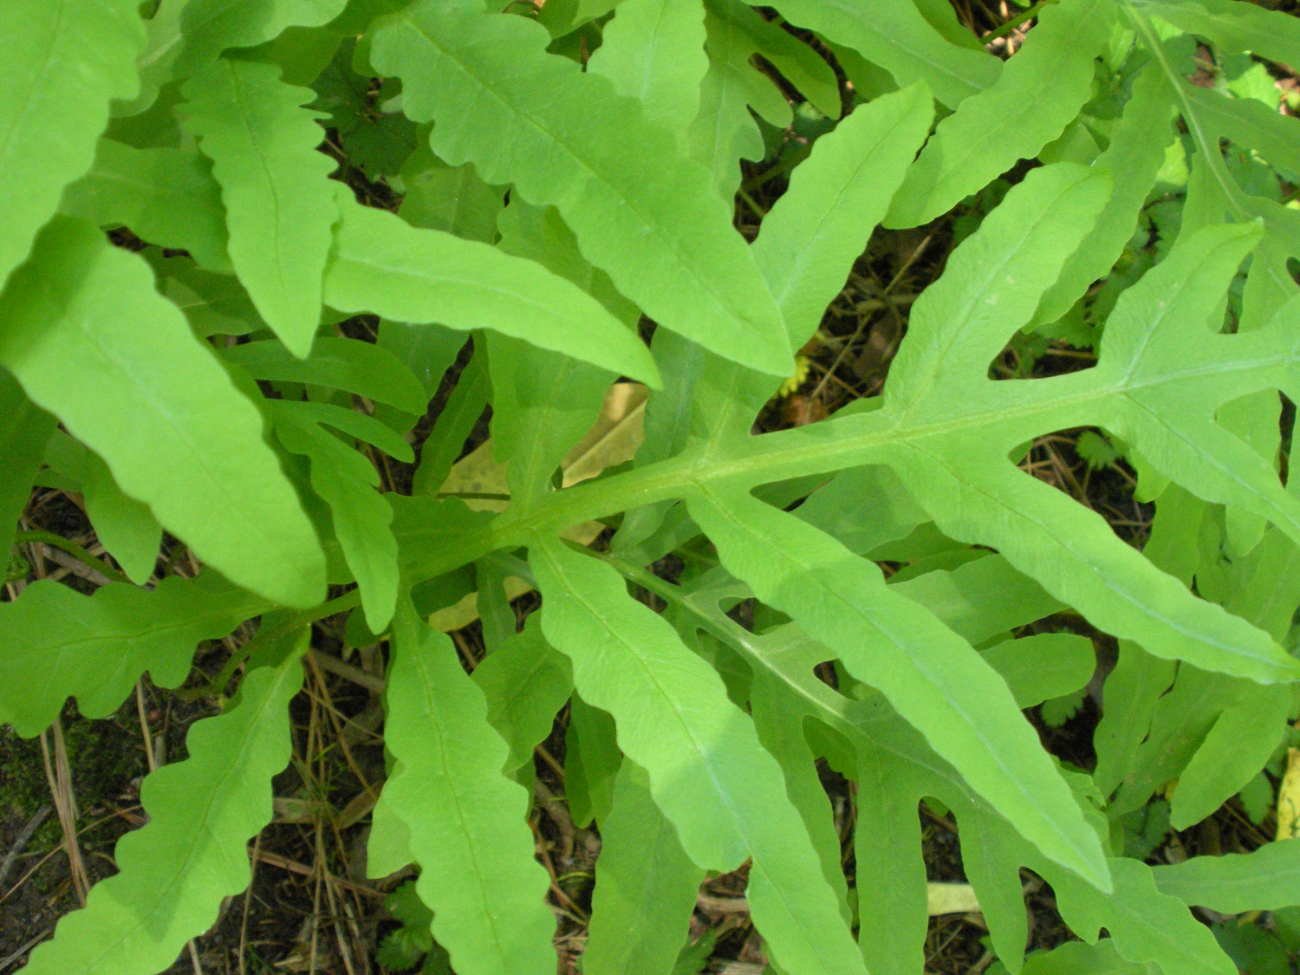 A type of fern